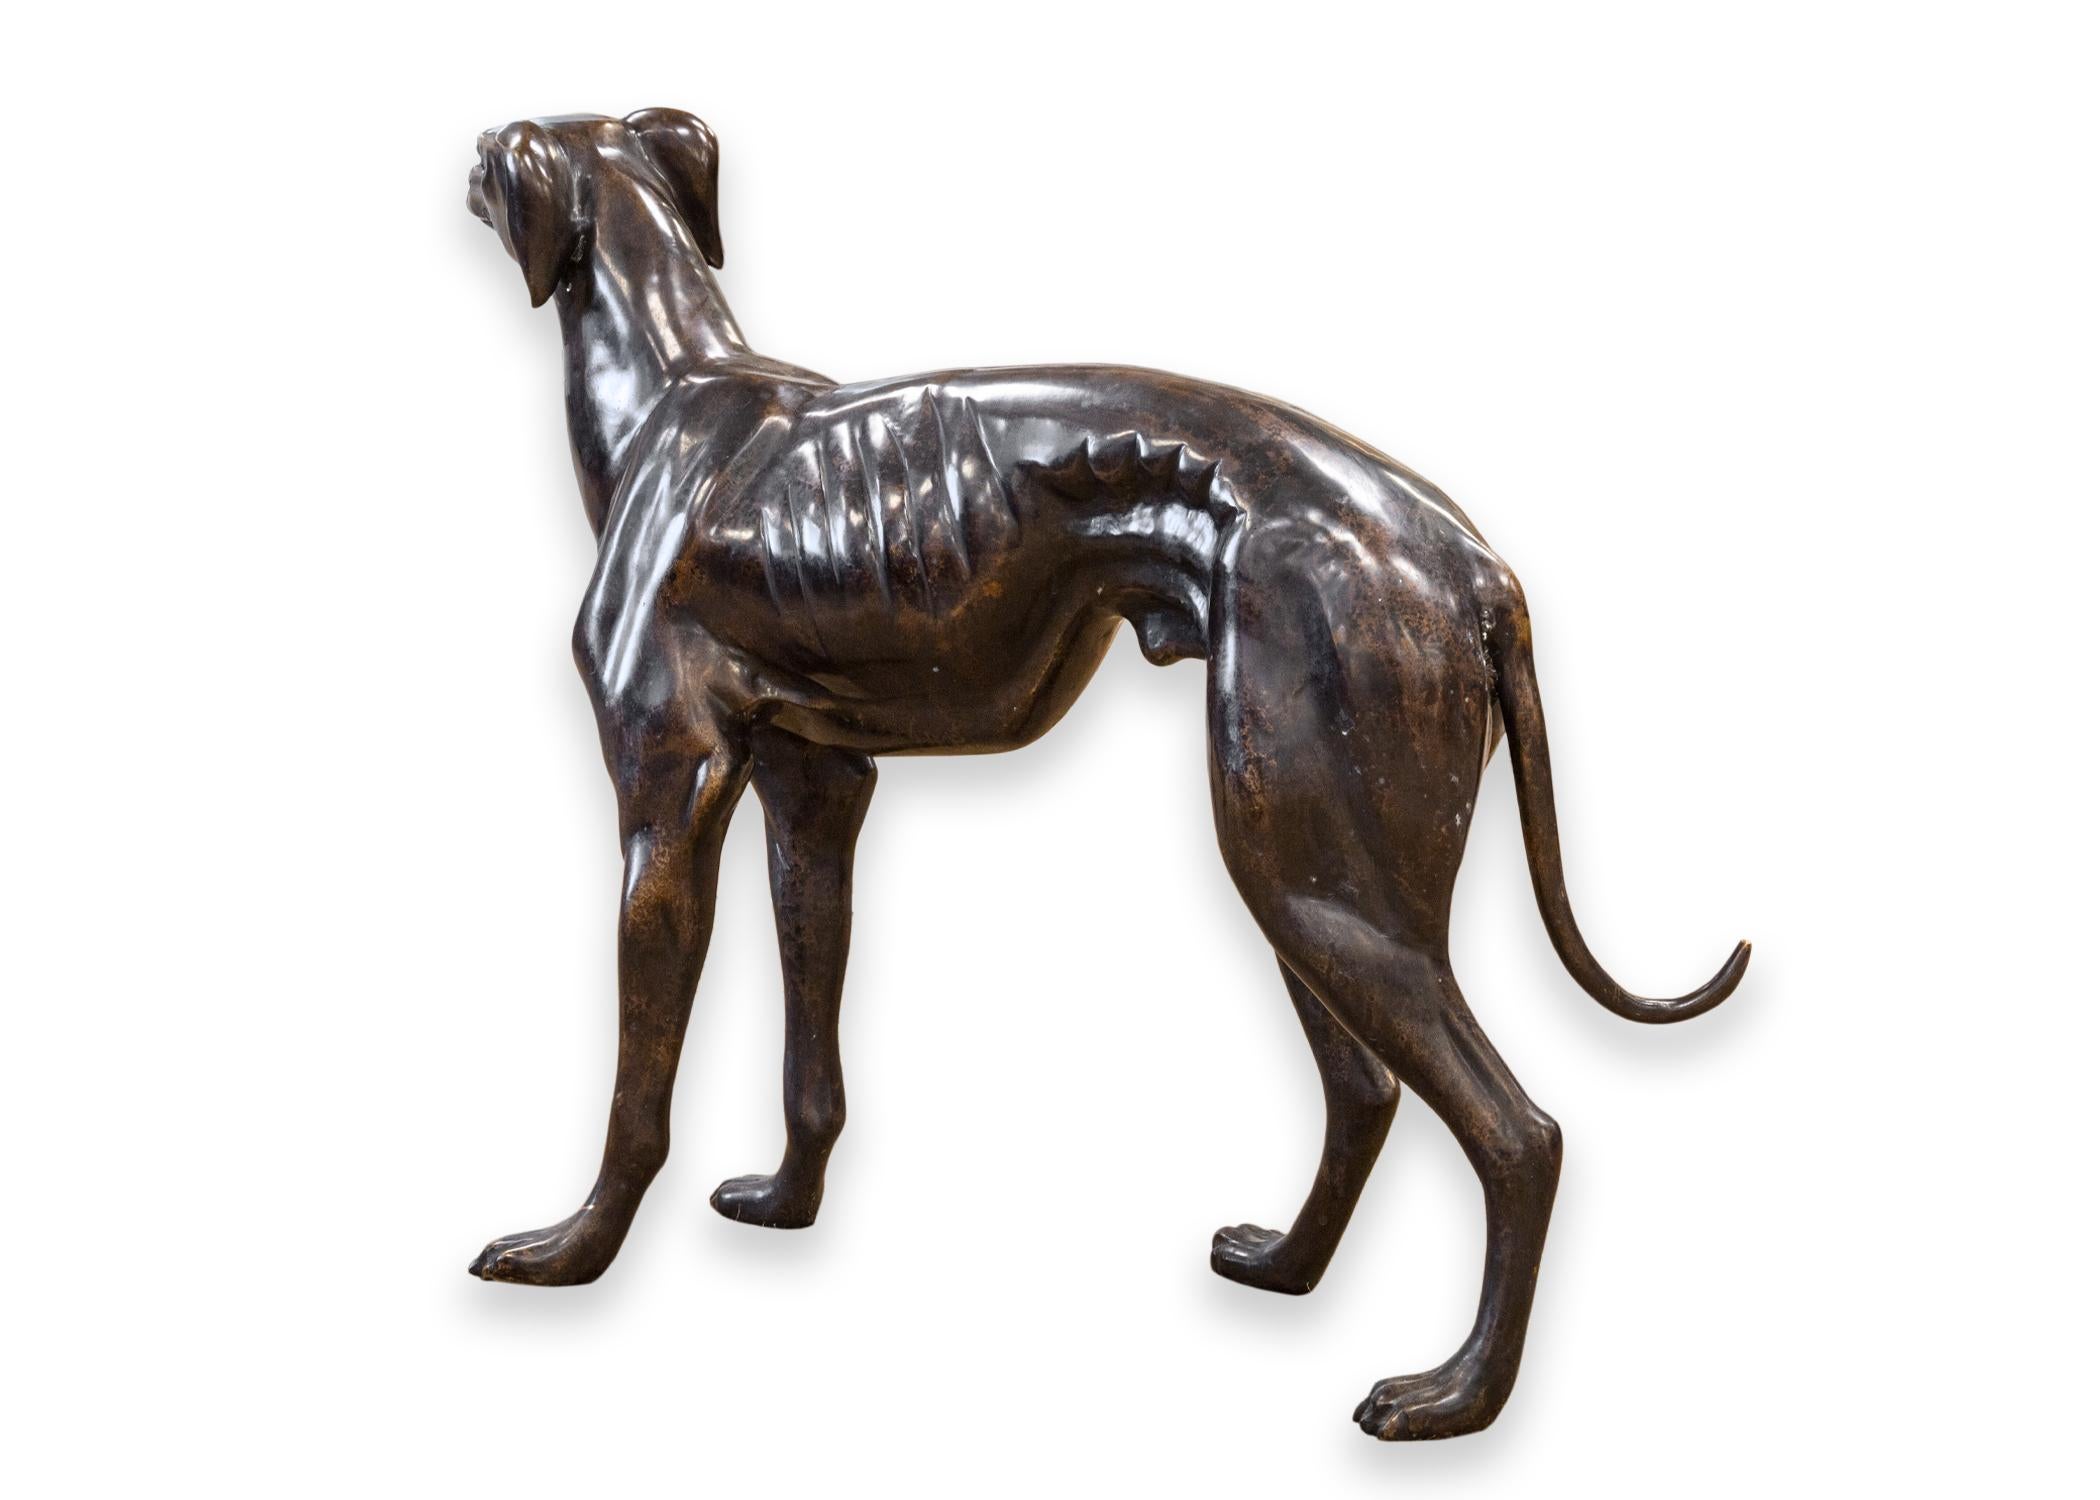 Sculpture en bronze d'un chien de type whippet ou greyhound. Une adorable petite sculpture grandeur nature qui conviendra parfaitement à tous les amoureux des chiens. Cette pièce est magnifiquement réalisée, avec des tonnes de détails et une échelle